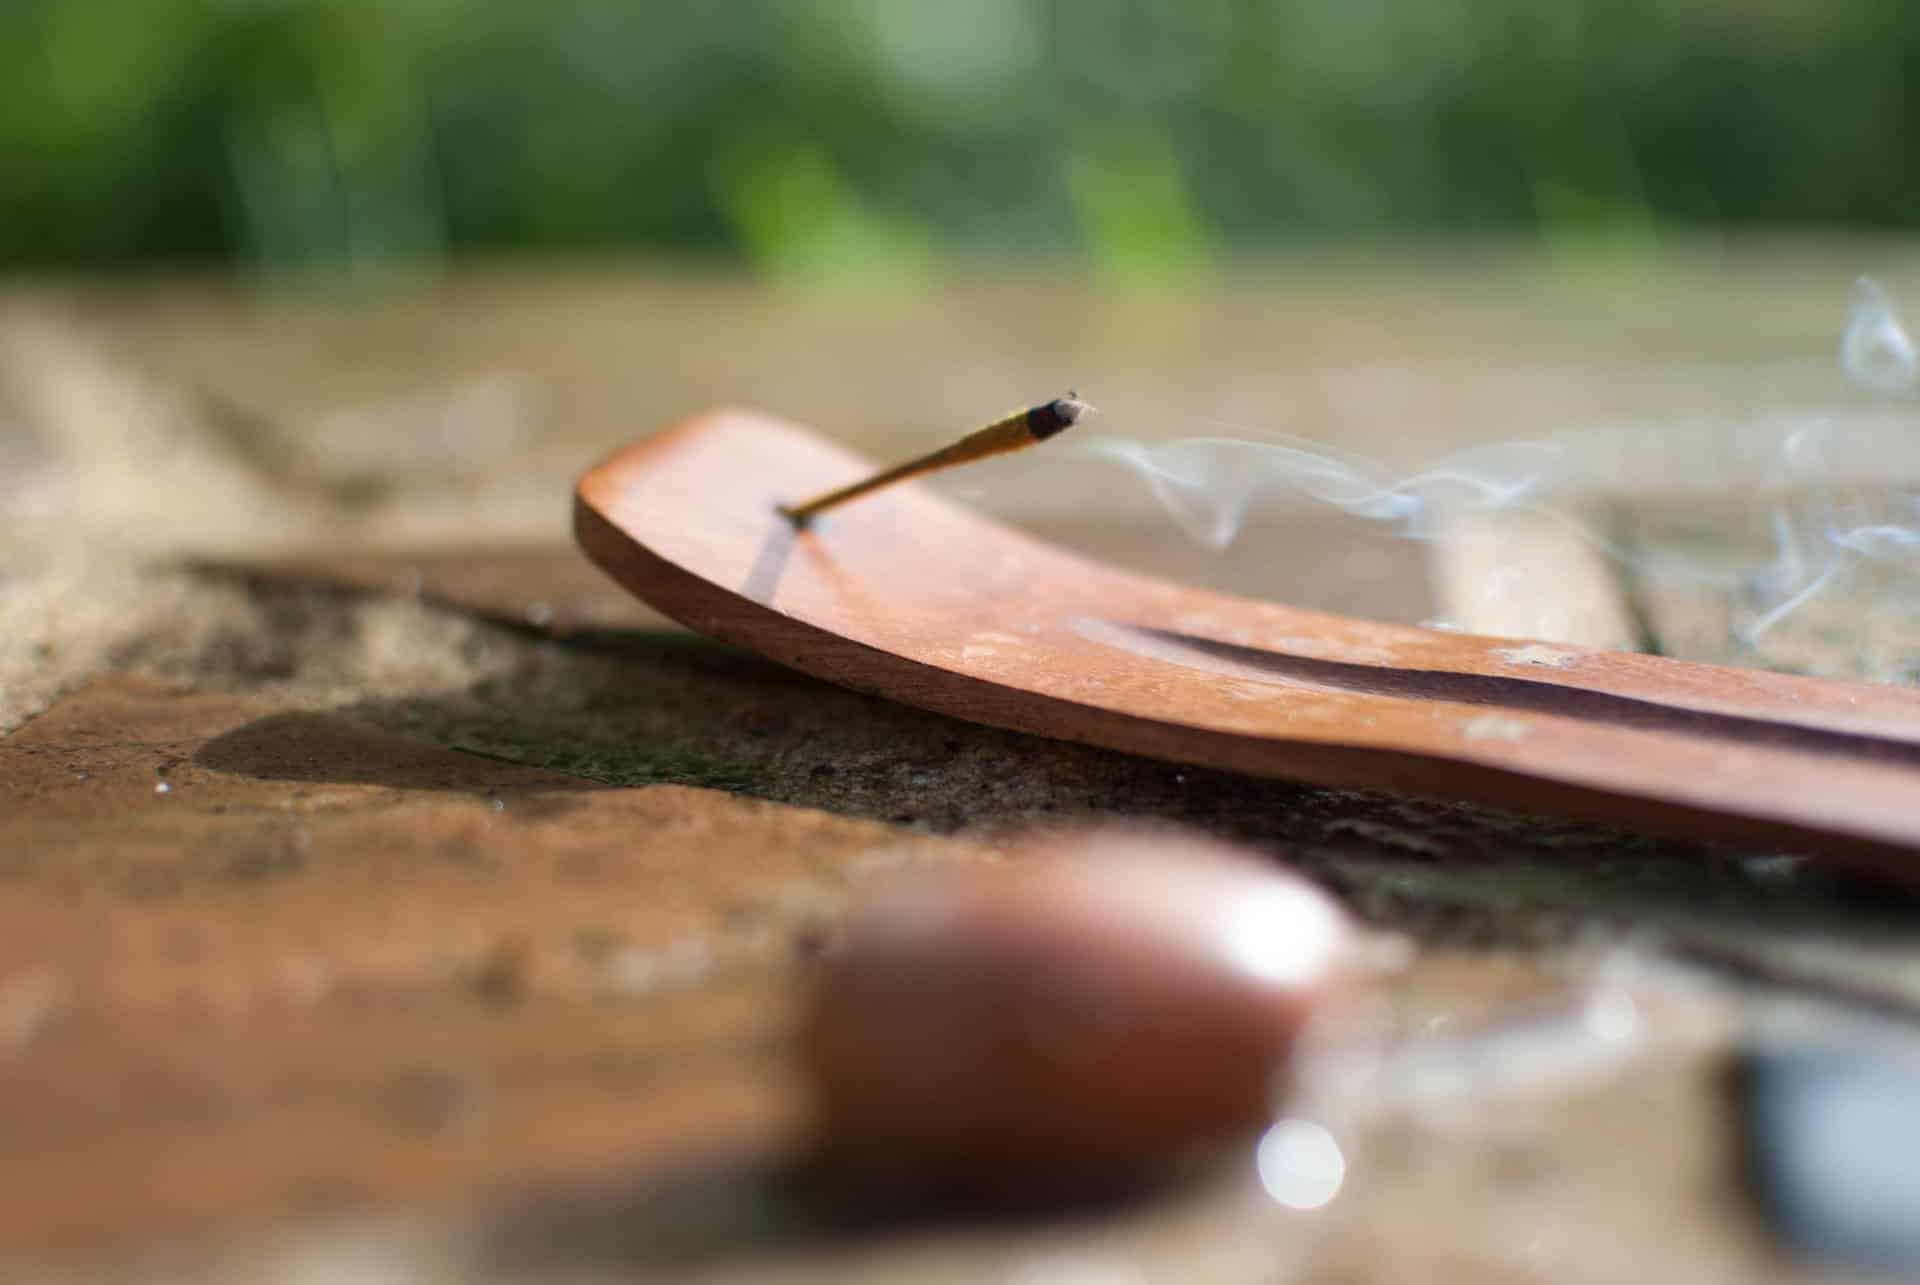 Imagem de um incensário sobre uma mesa de madeira. Nele está sendo queimado um incenso de massala. Ao lado dele, uma pedra pequena na cor marrom.

